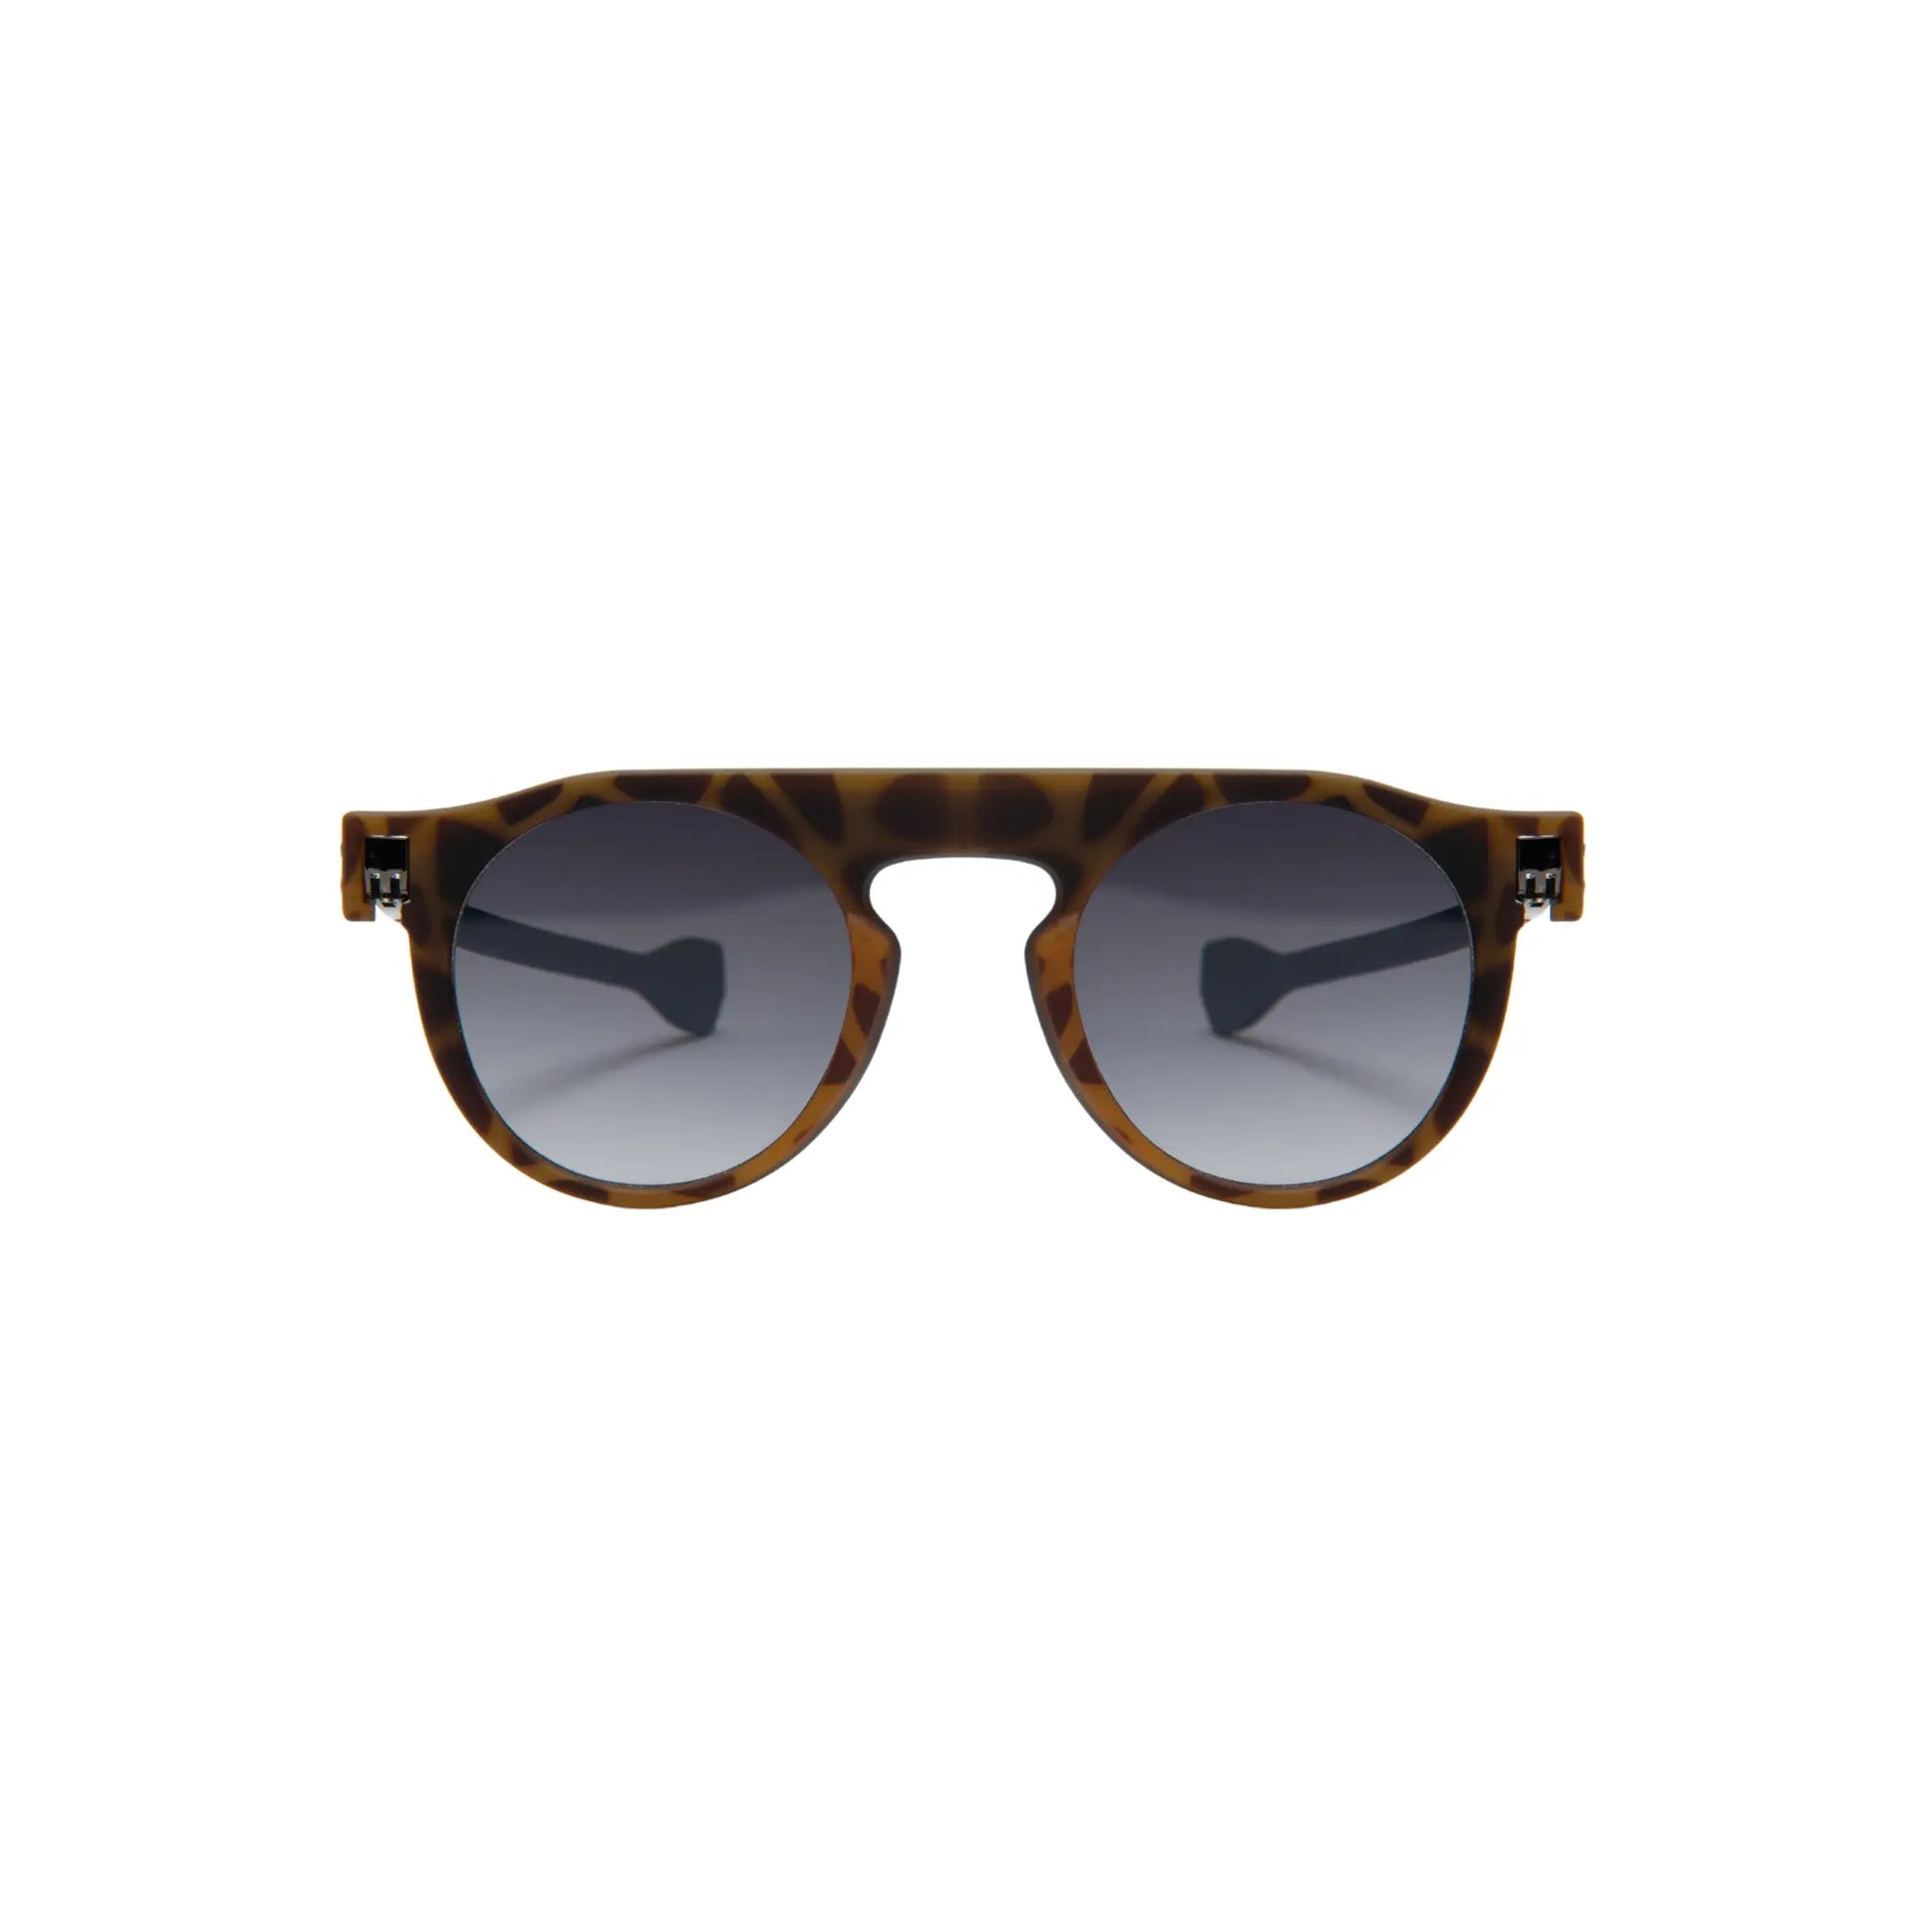 Reverso sunglasses Havana & dark blue reversible & ultra light front view 2